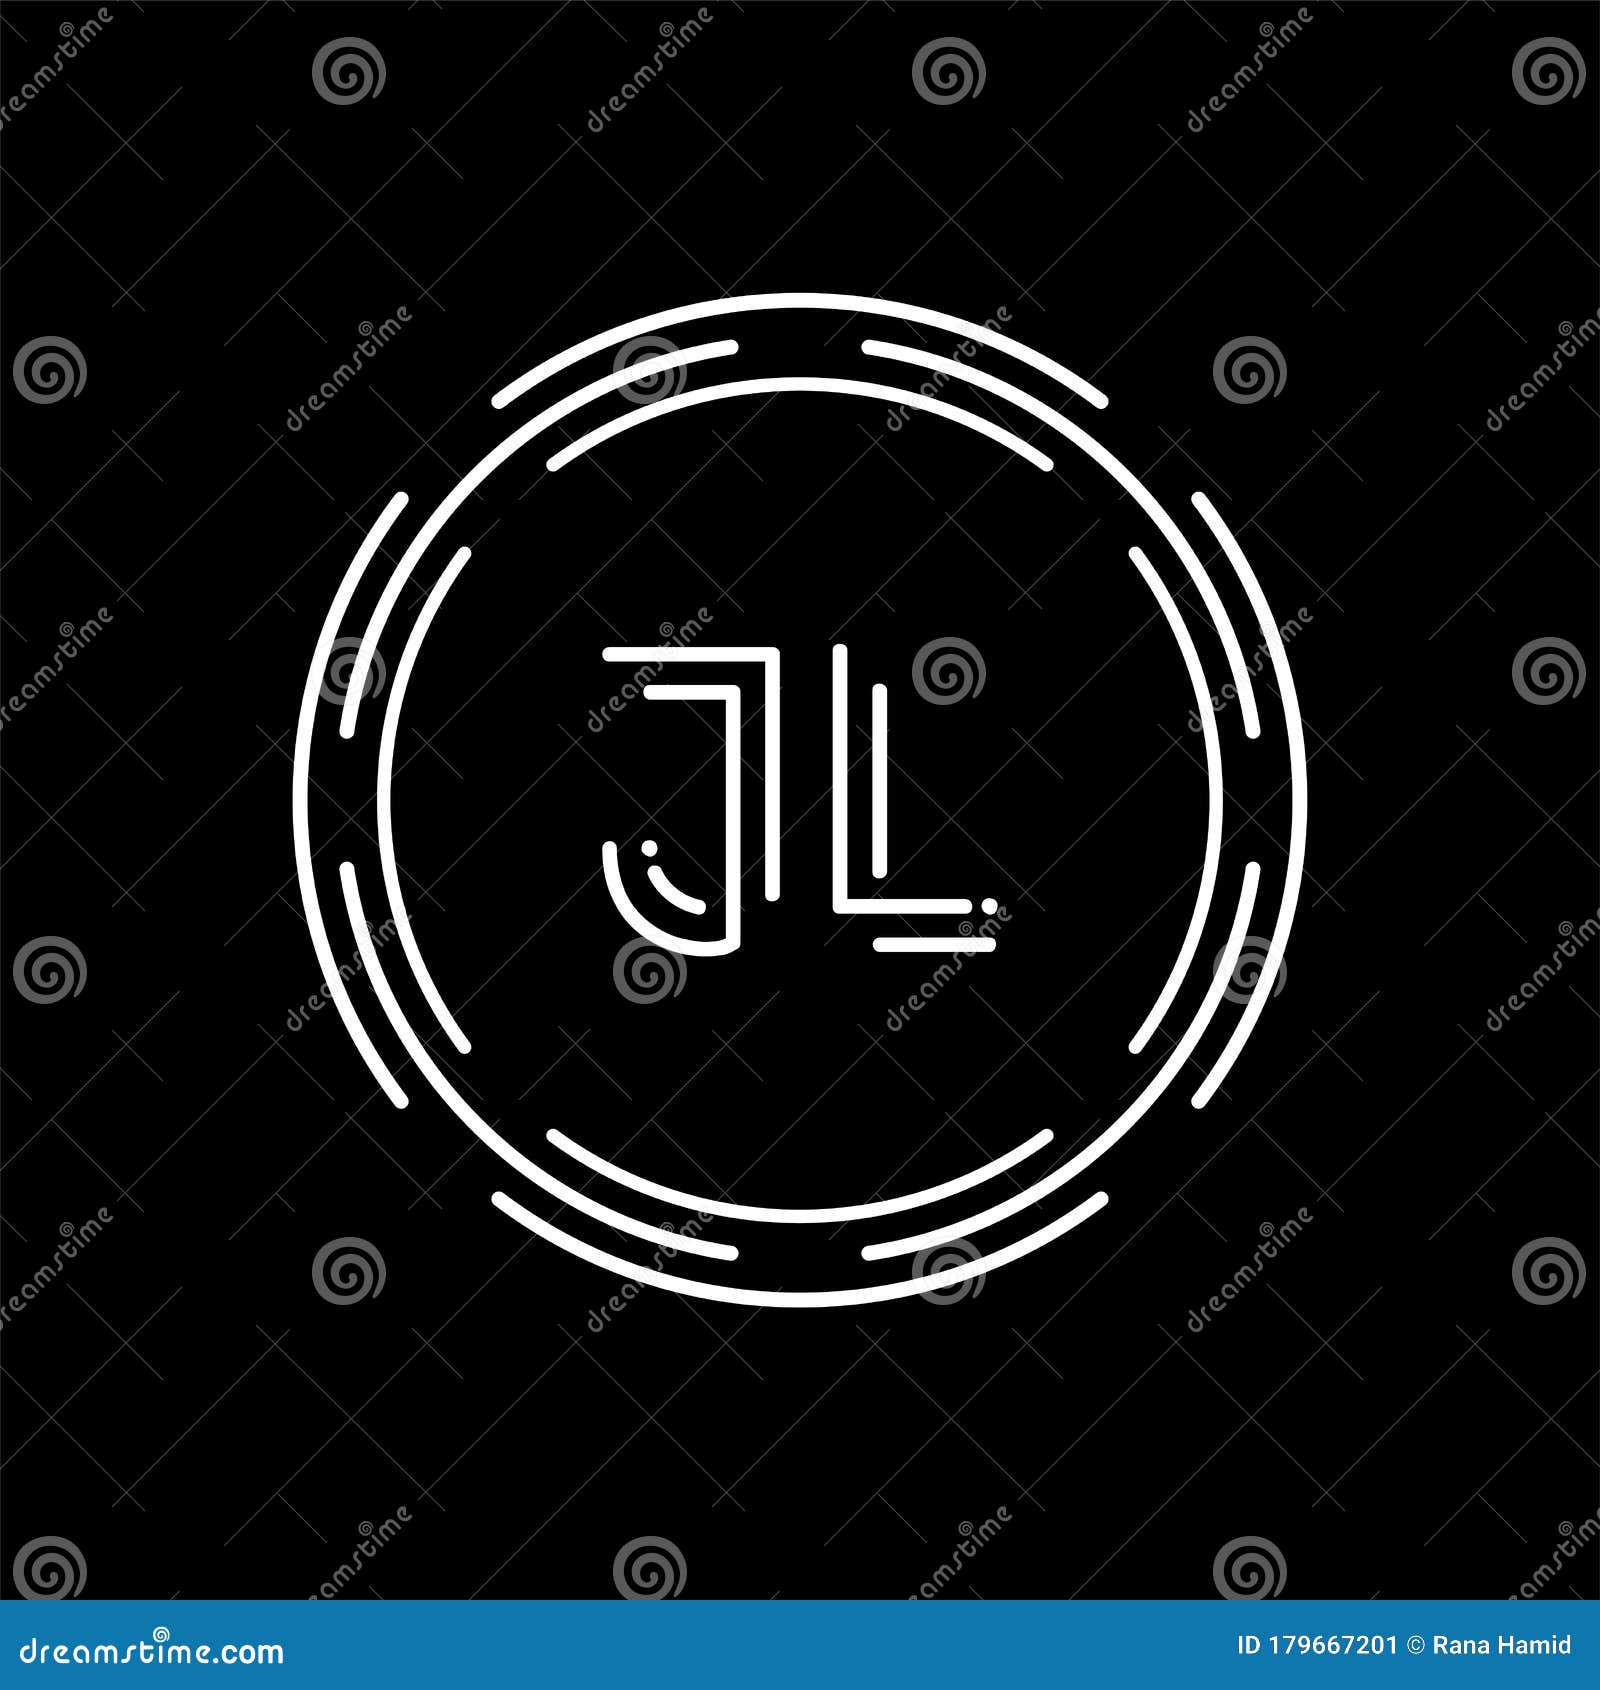 Jl Logo PNG Vectors Free Download